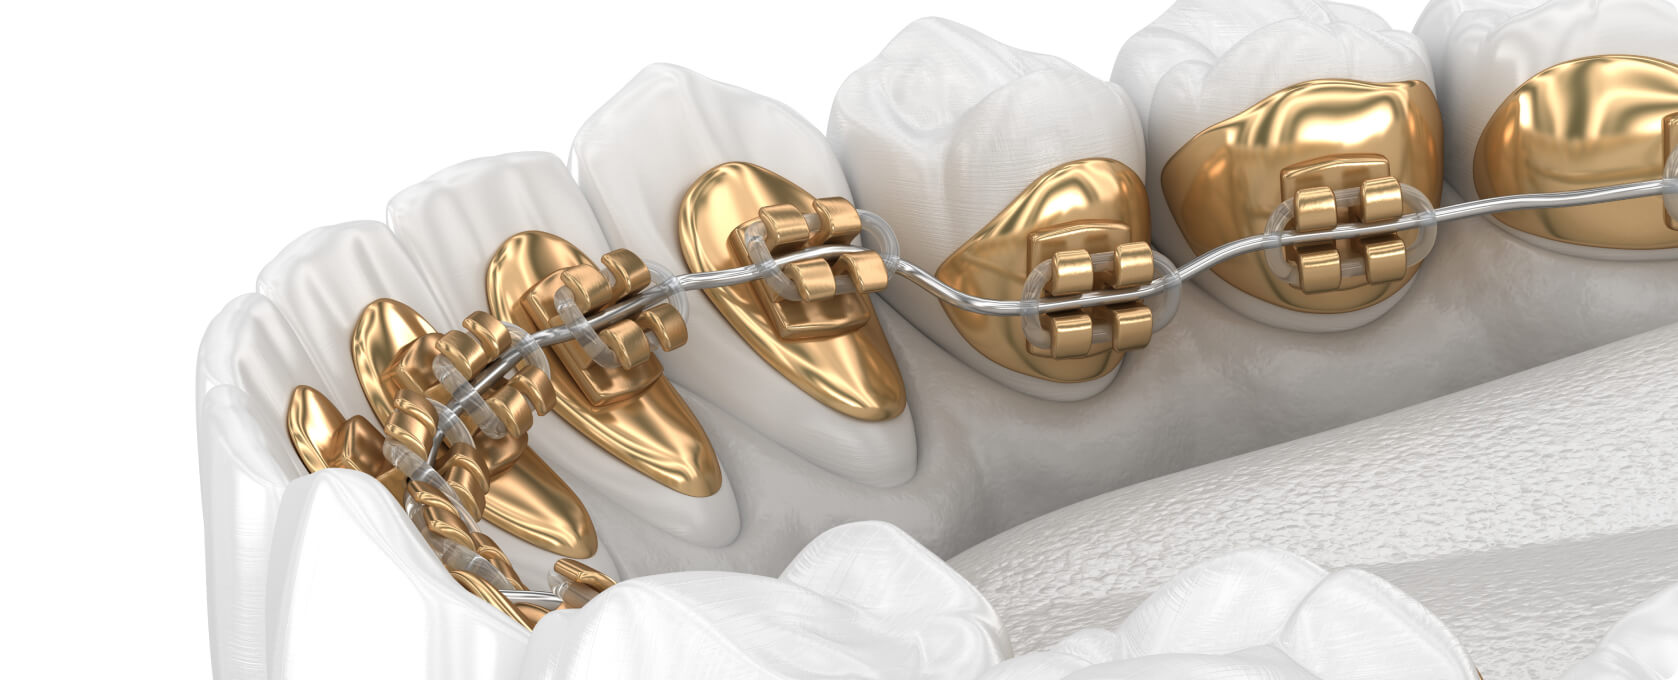 Zahnspange - Wie funktioniert die Behandlung mit einer Zahnspange von innen?